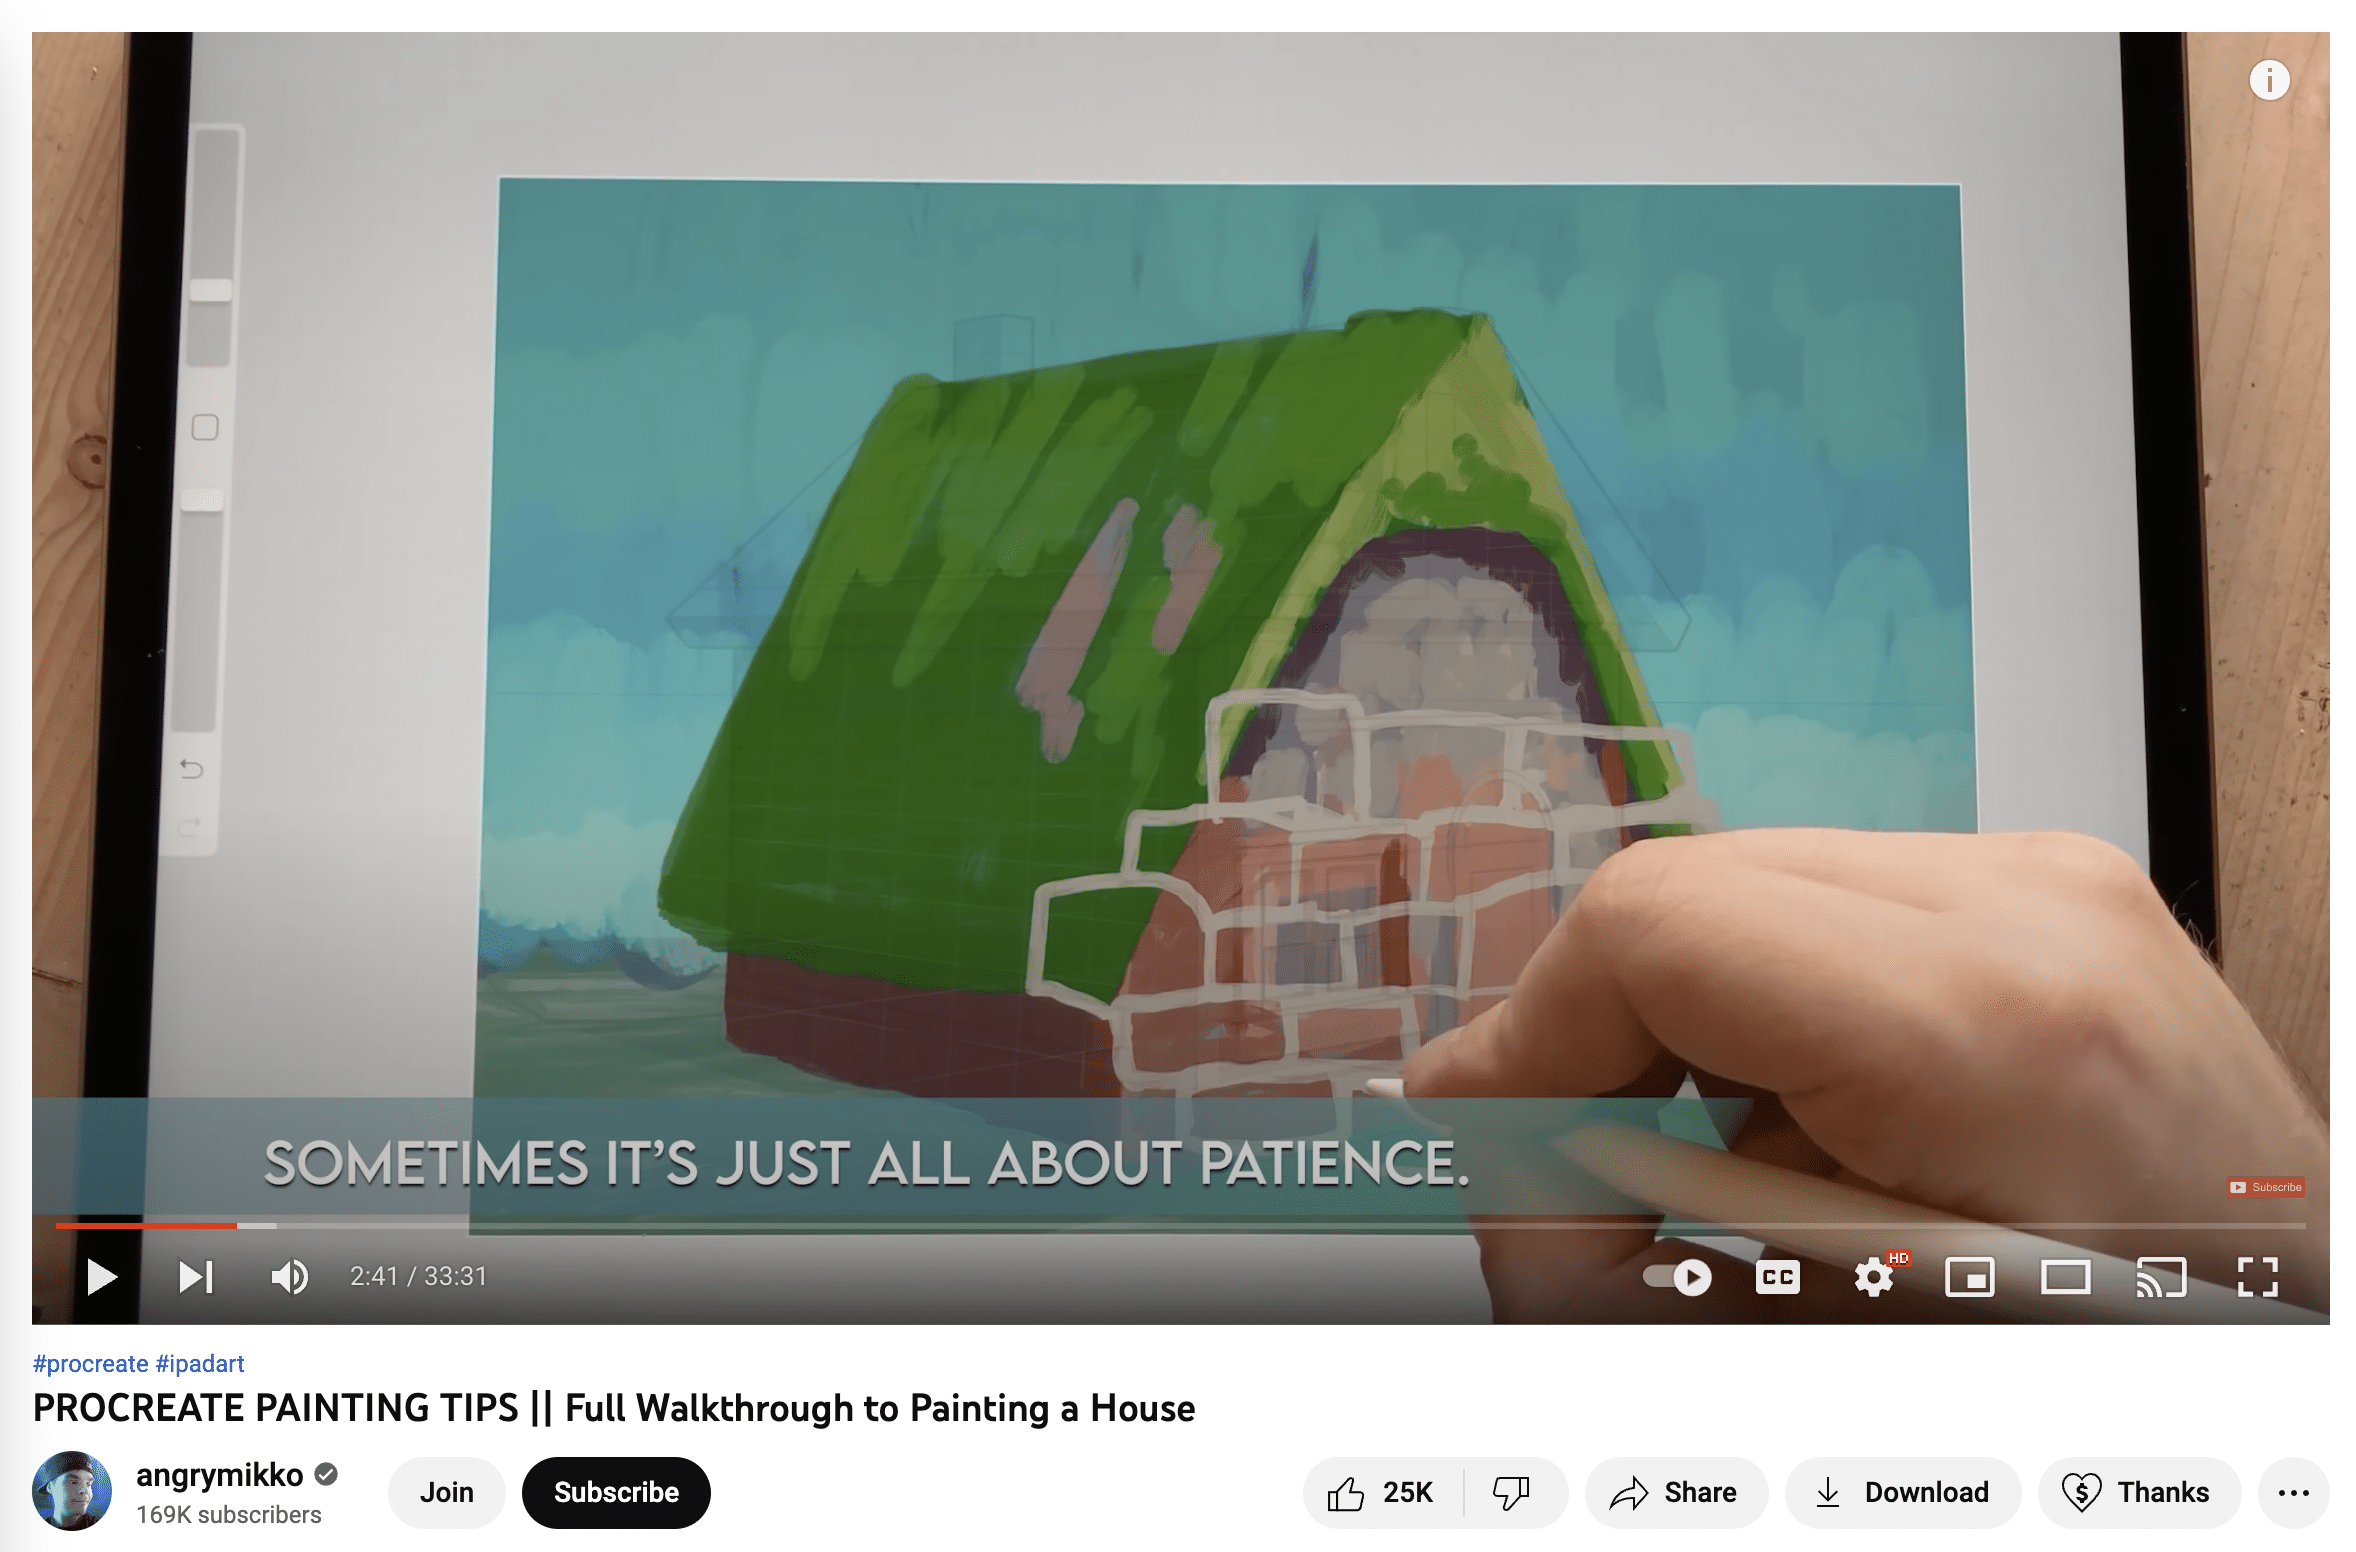 کانال یوتیوب تصویر angrymikko که روند تولید مثل کشیدن یک خانه را نشان می دهد